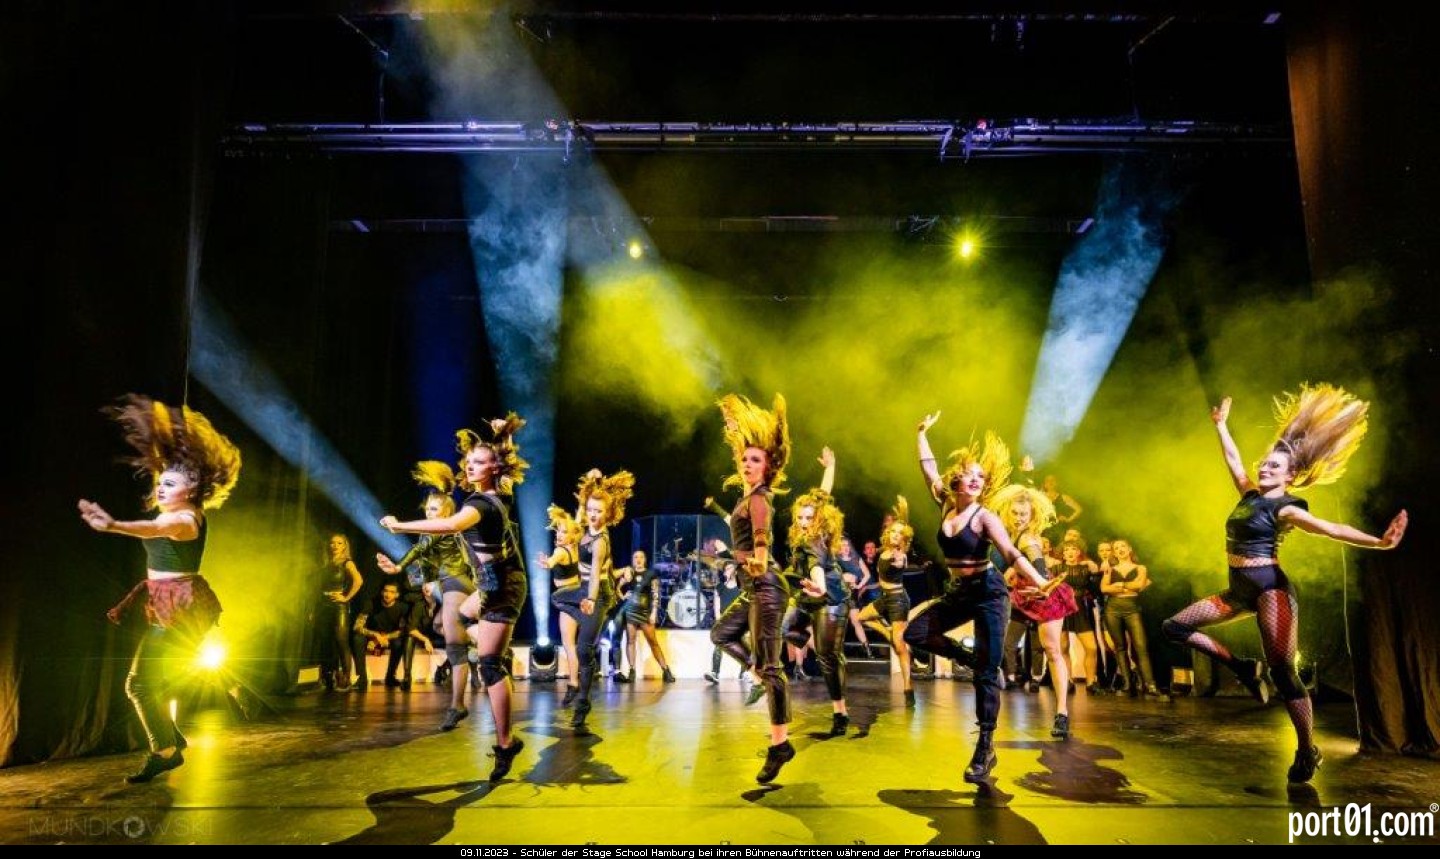 Schüler der Stage School Hamburg bei ihren Bühnenauftritten während der Profiausbildung